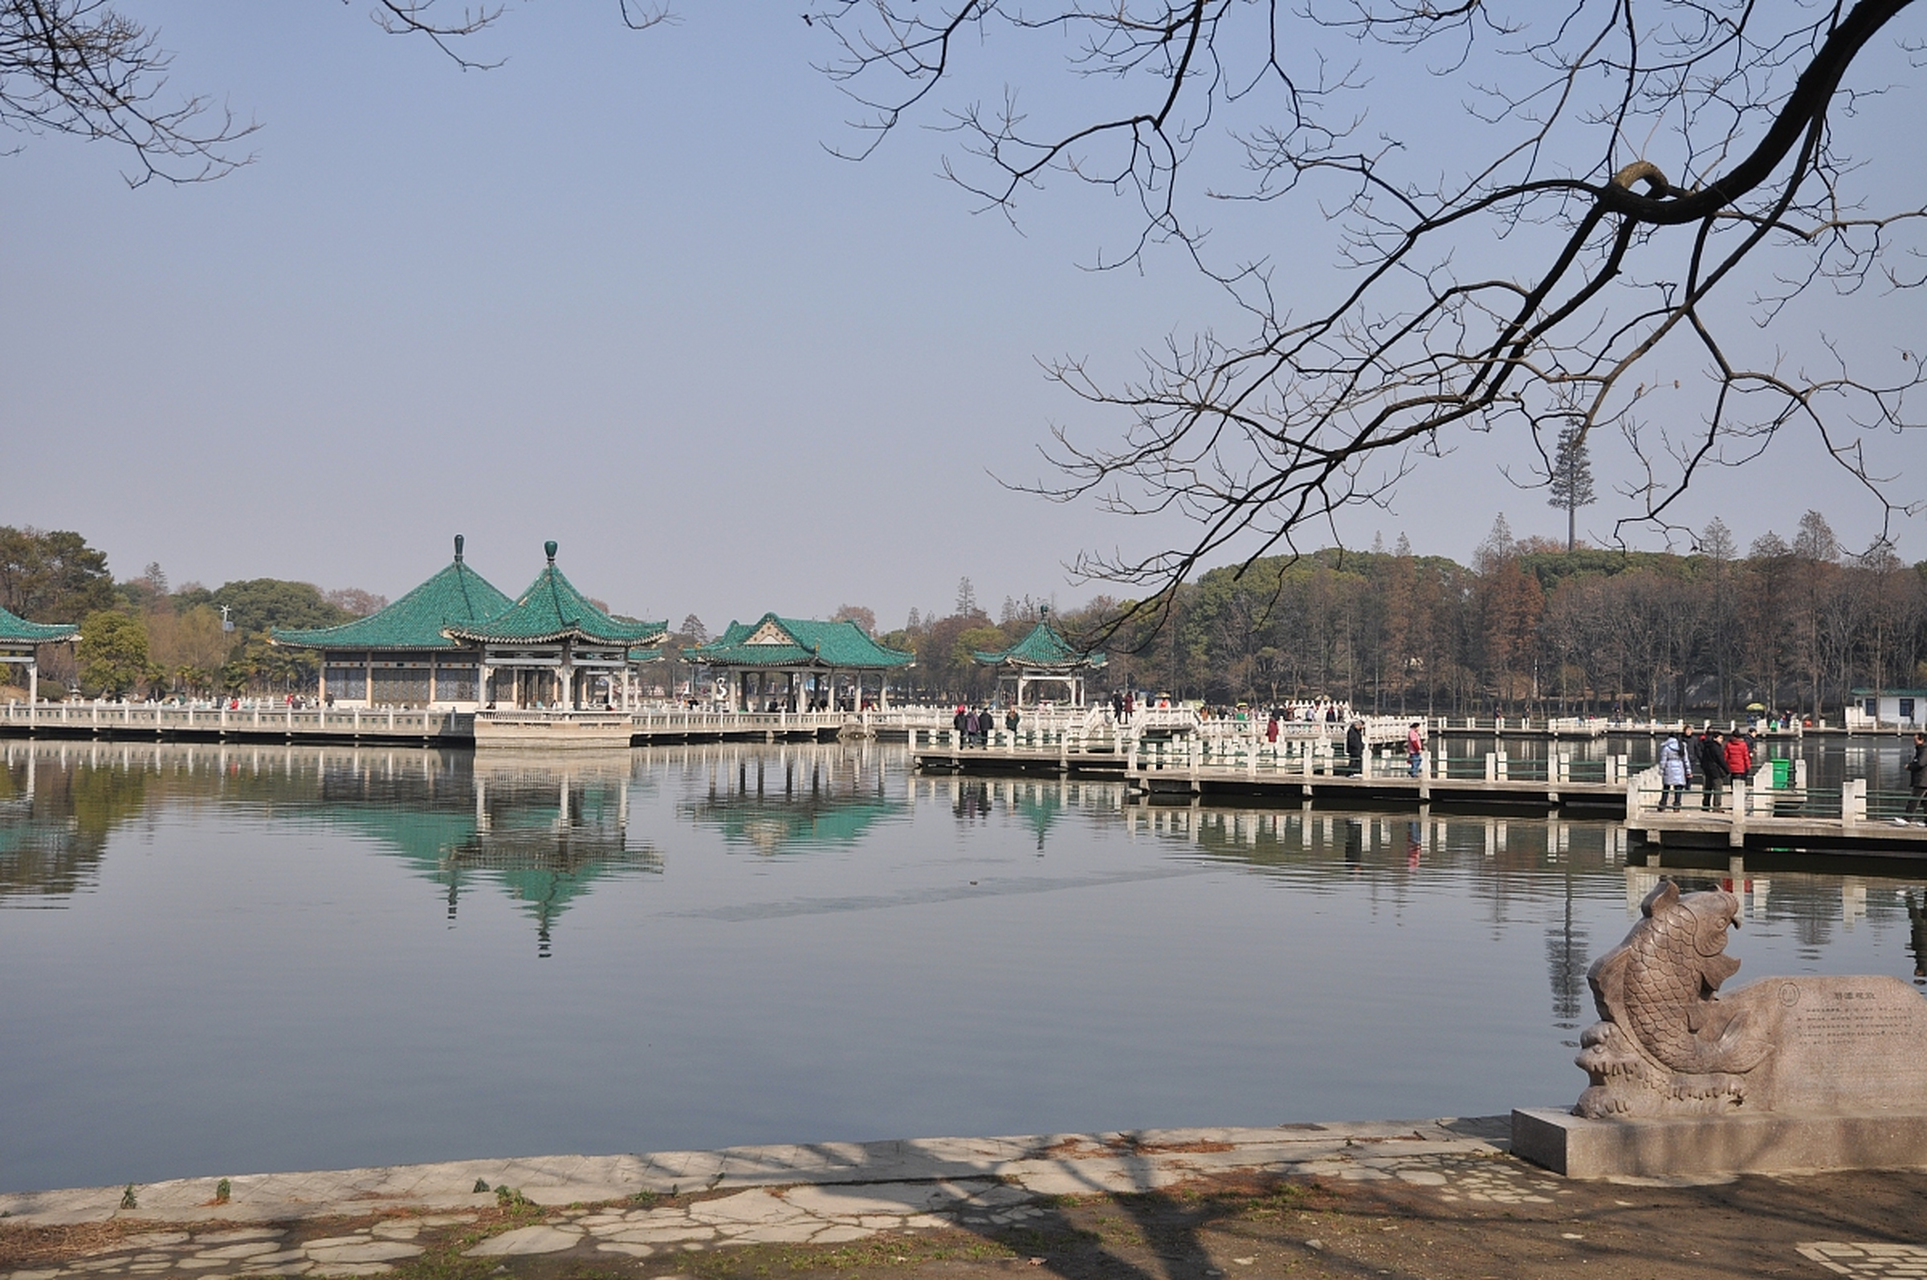 东湖听涛风景区,这可真是武汉的一颗璀璨明珠啊!